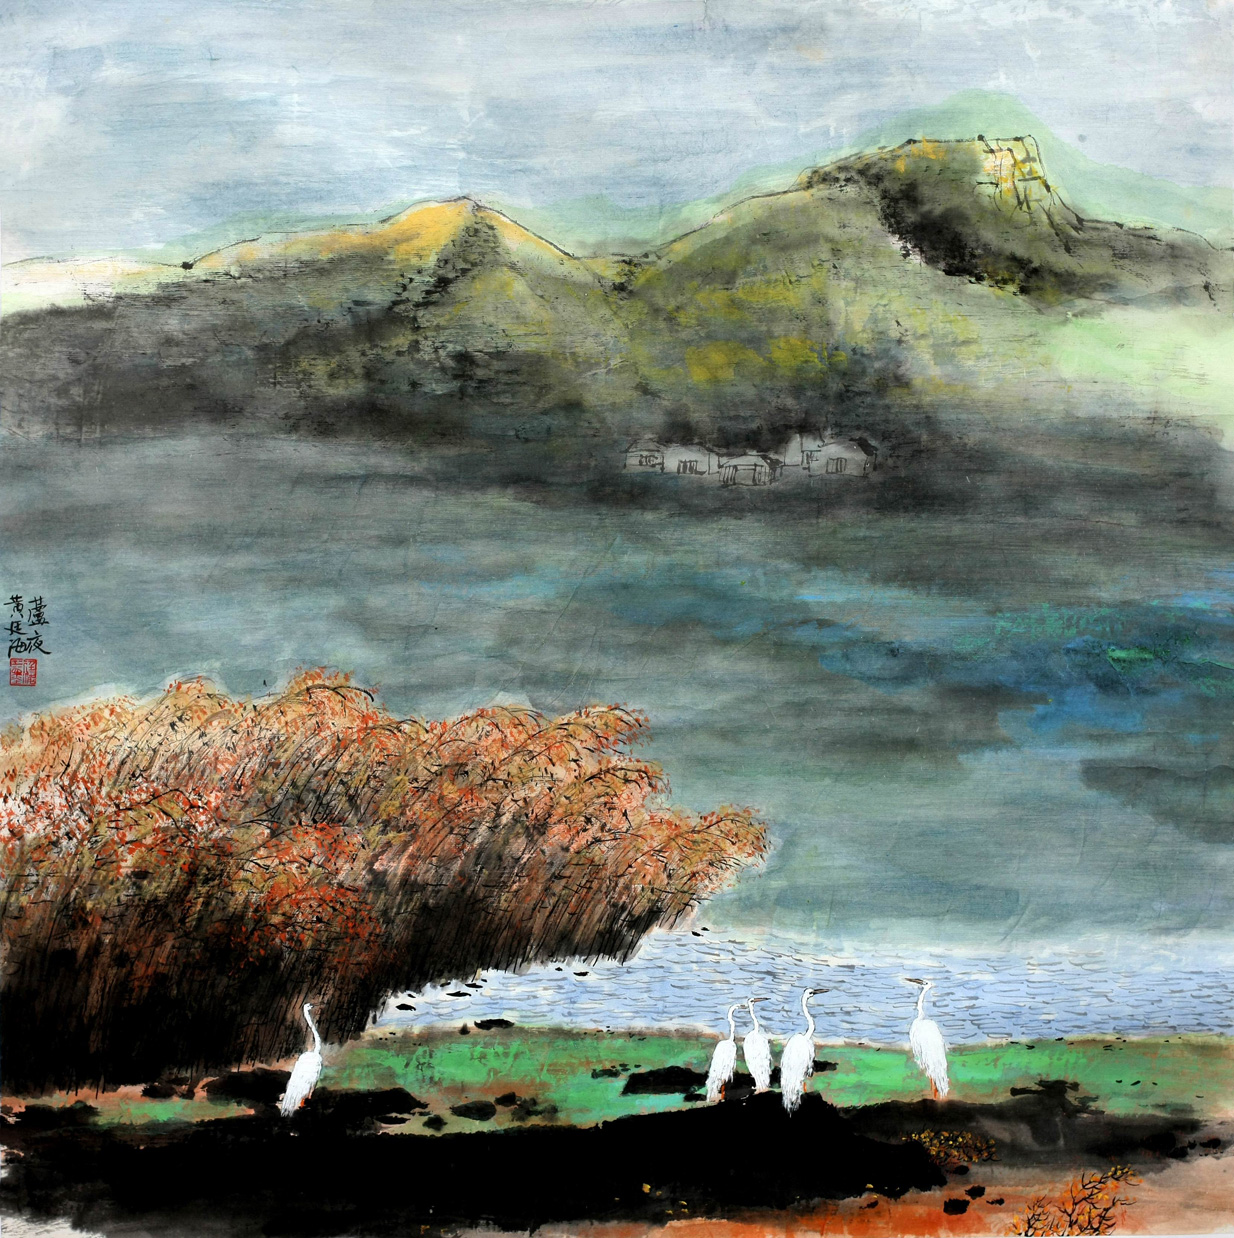 黄廷海——学术丰厚、画风独造的山水画大家